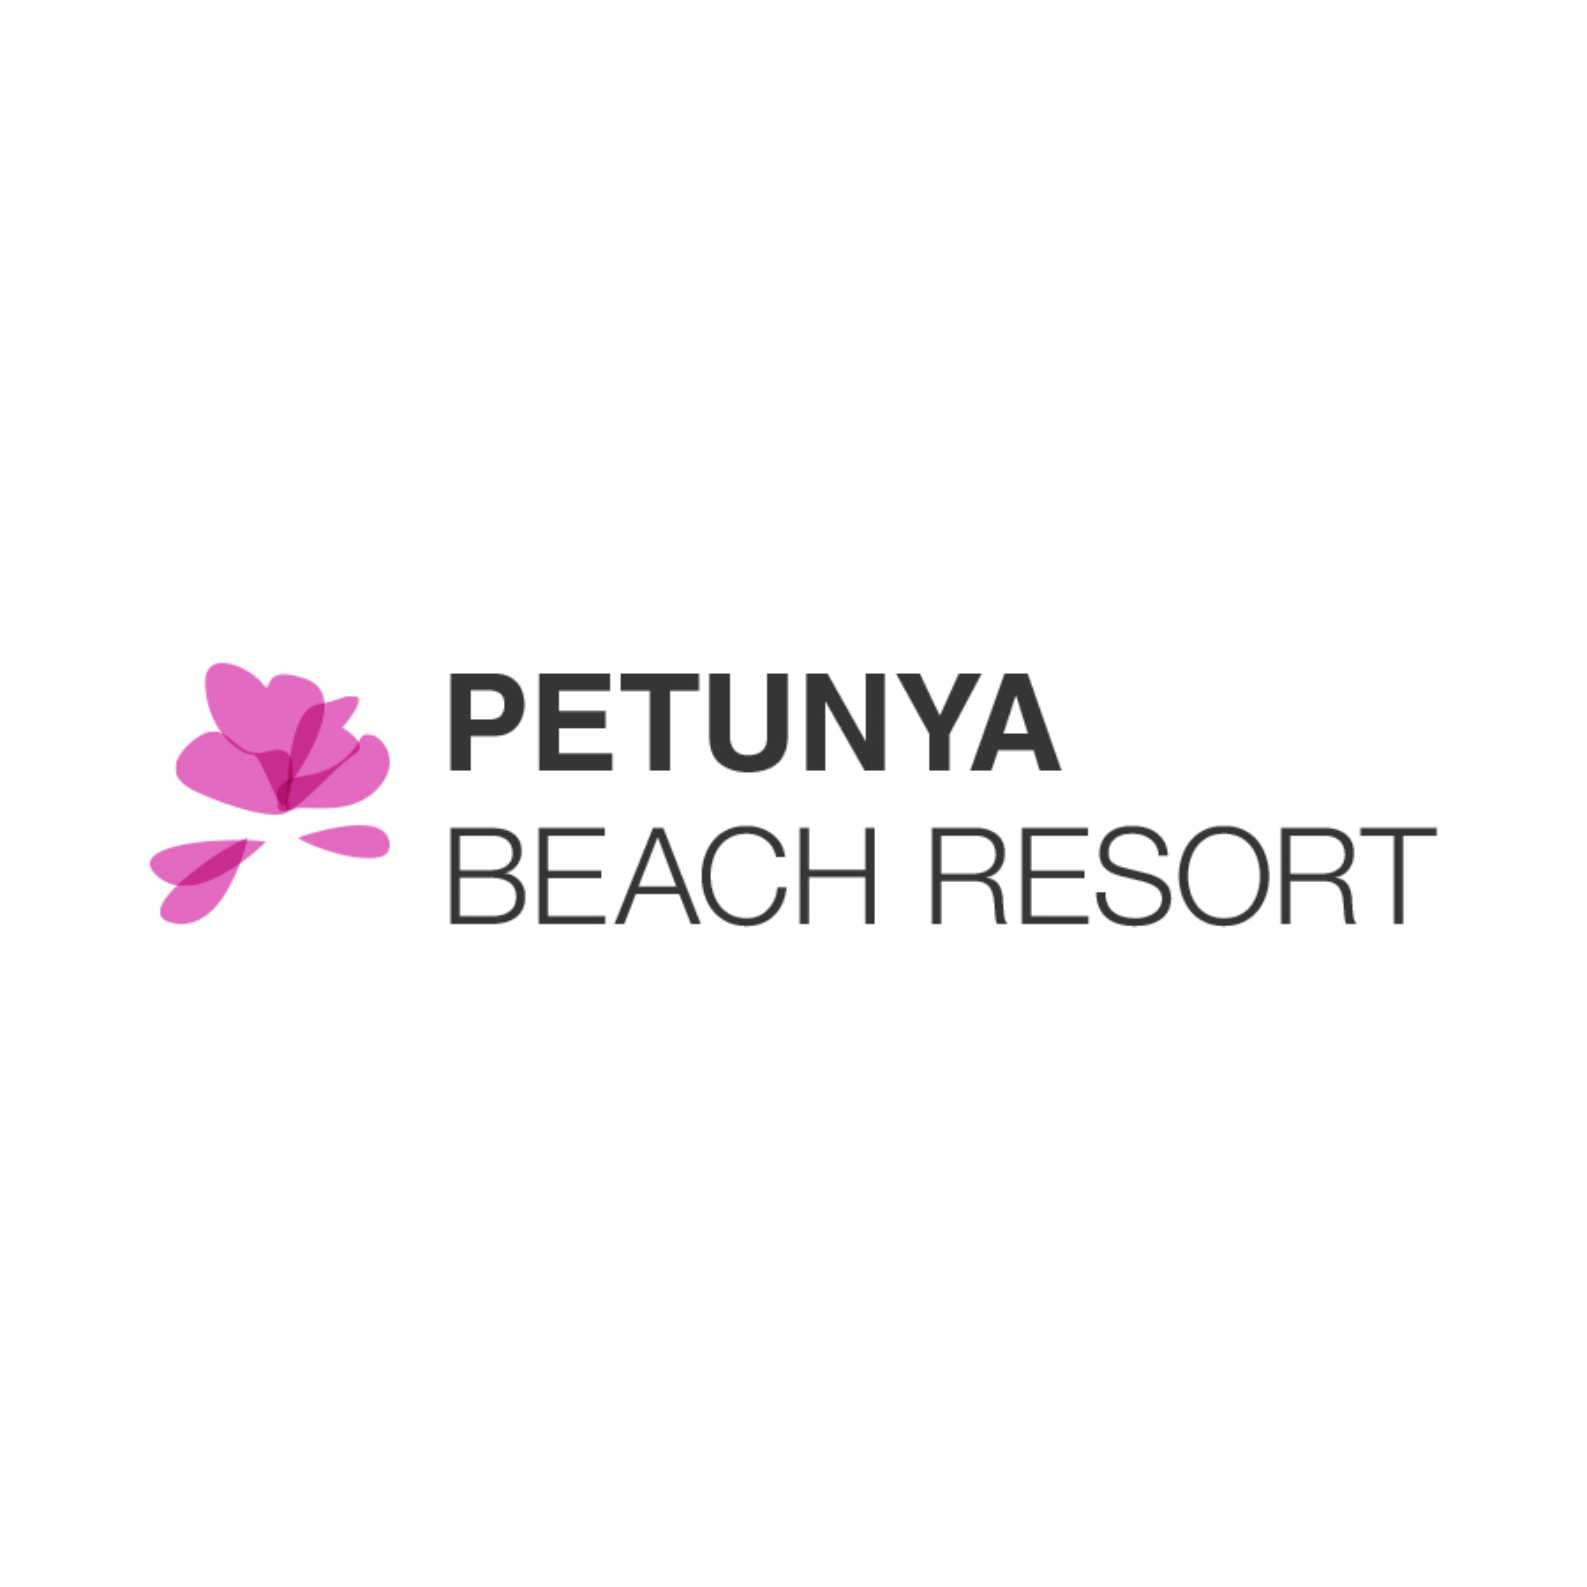 PETUNYA BEACH RESORT